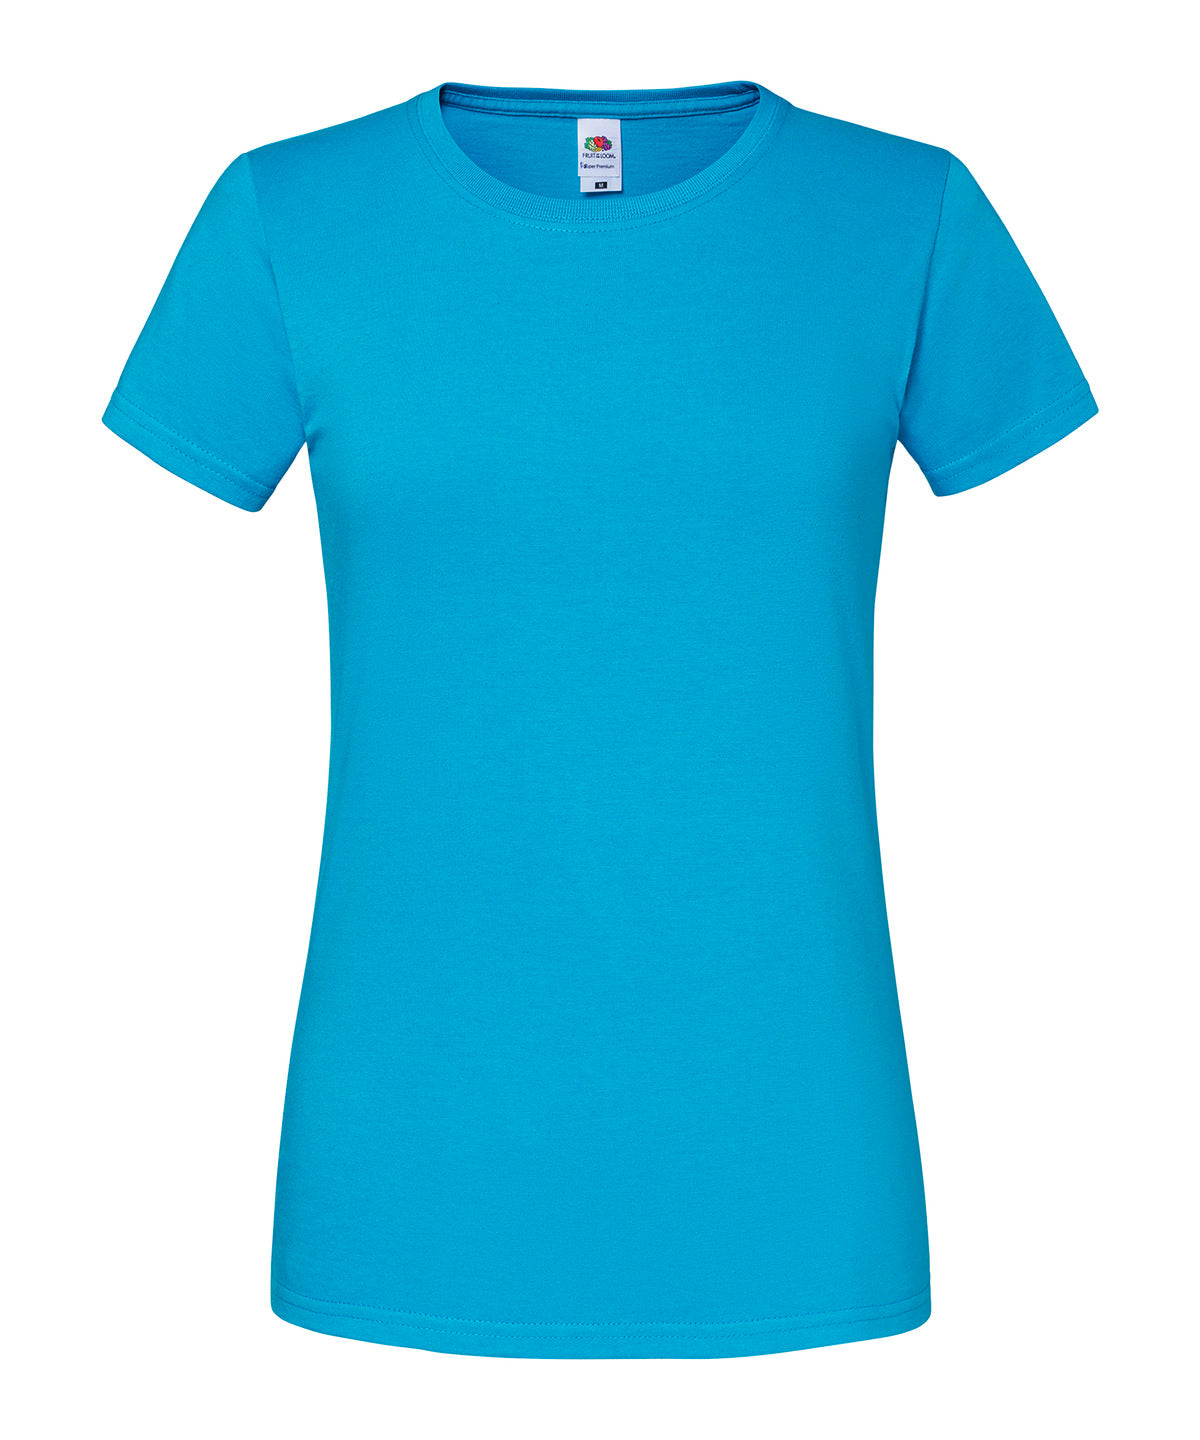 Stuttermabolir - Women's Iconic 195 Ringspun Premium T-shirt